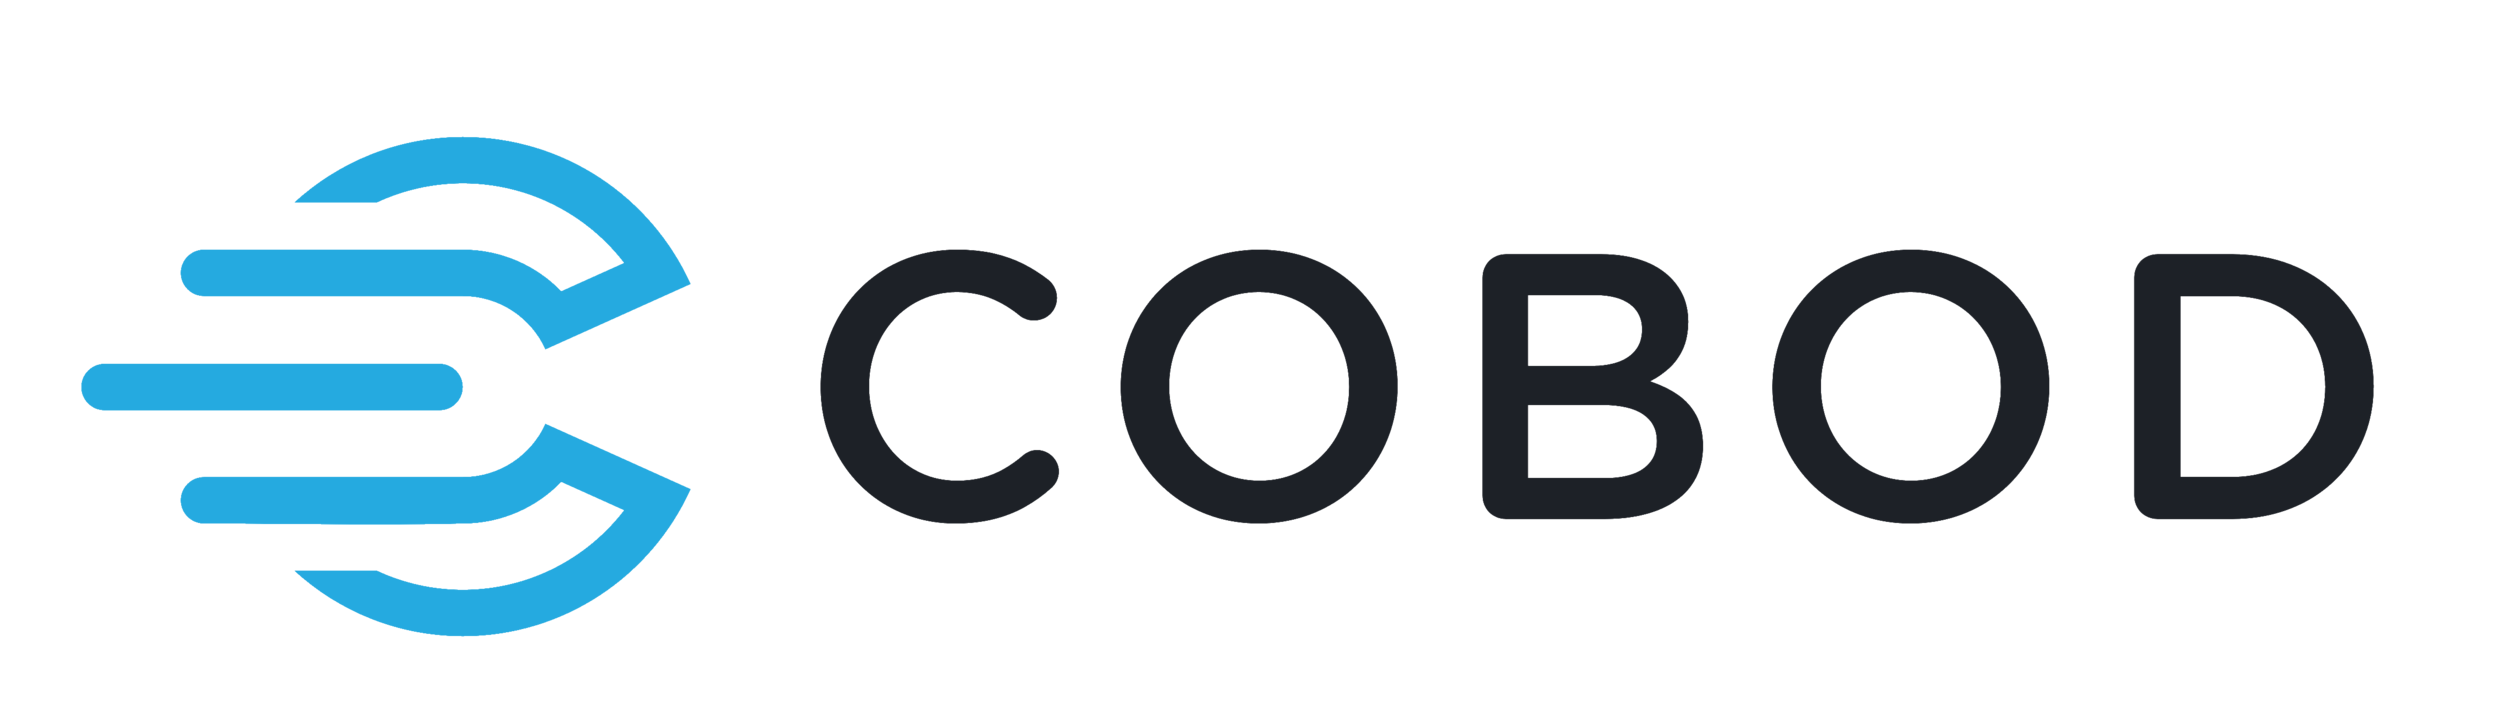 COBOD_logo_transparent.png